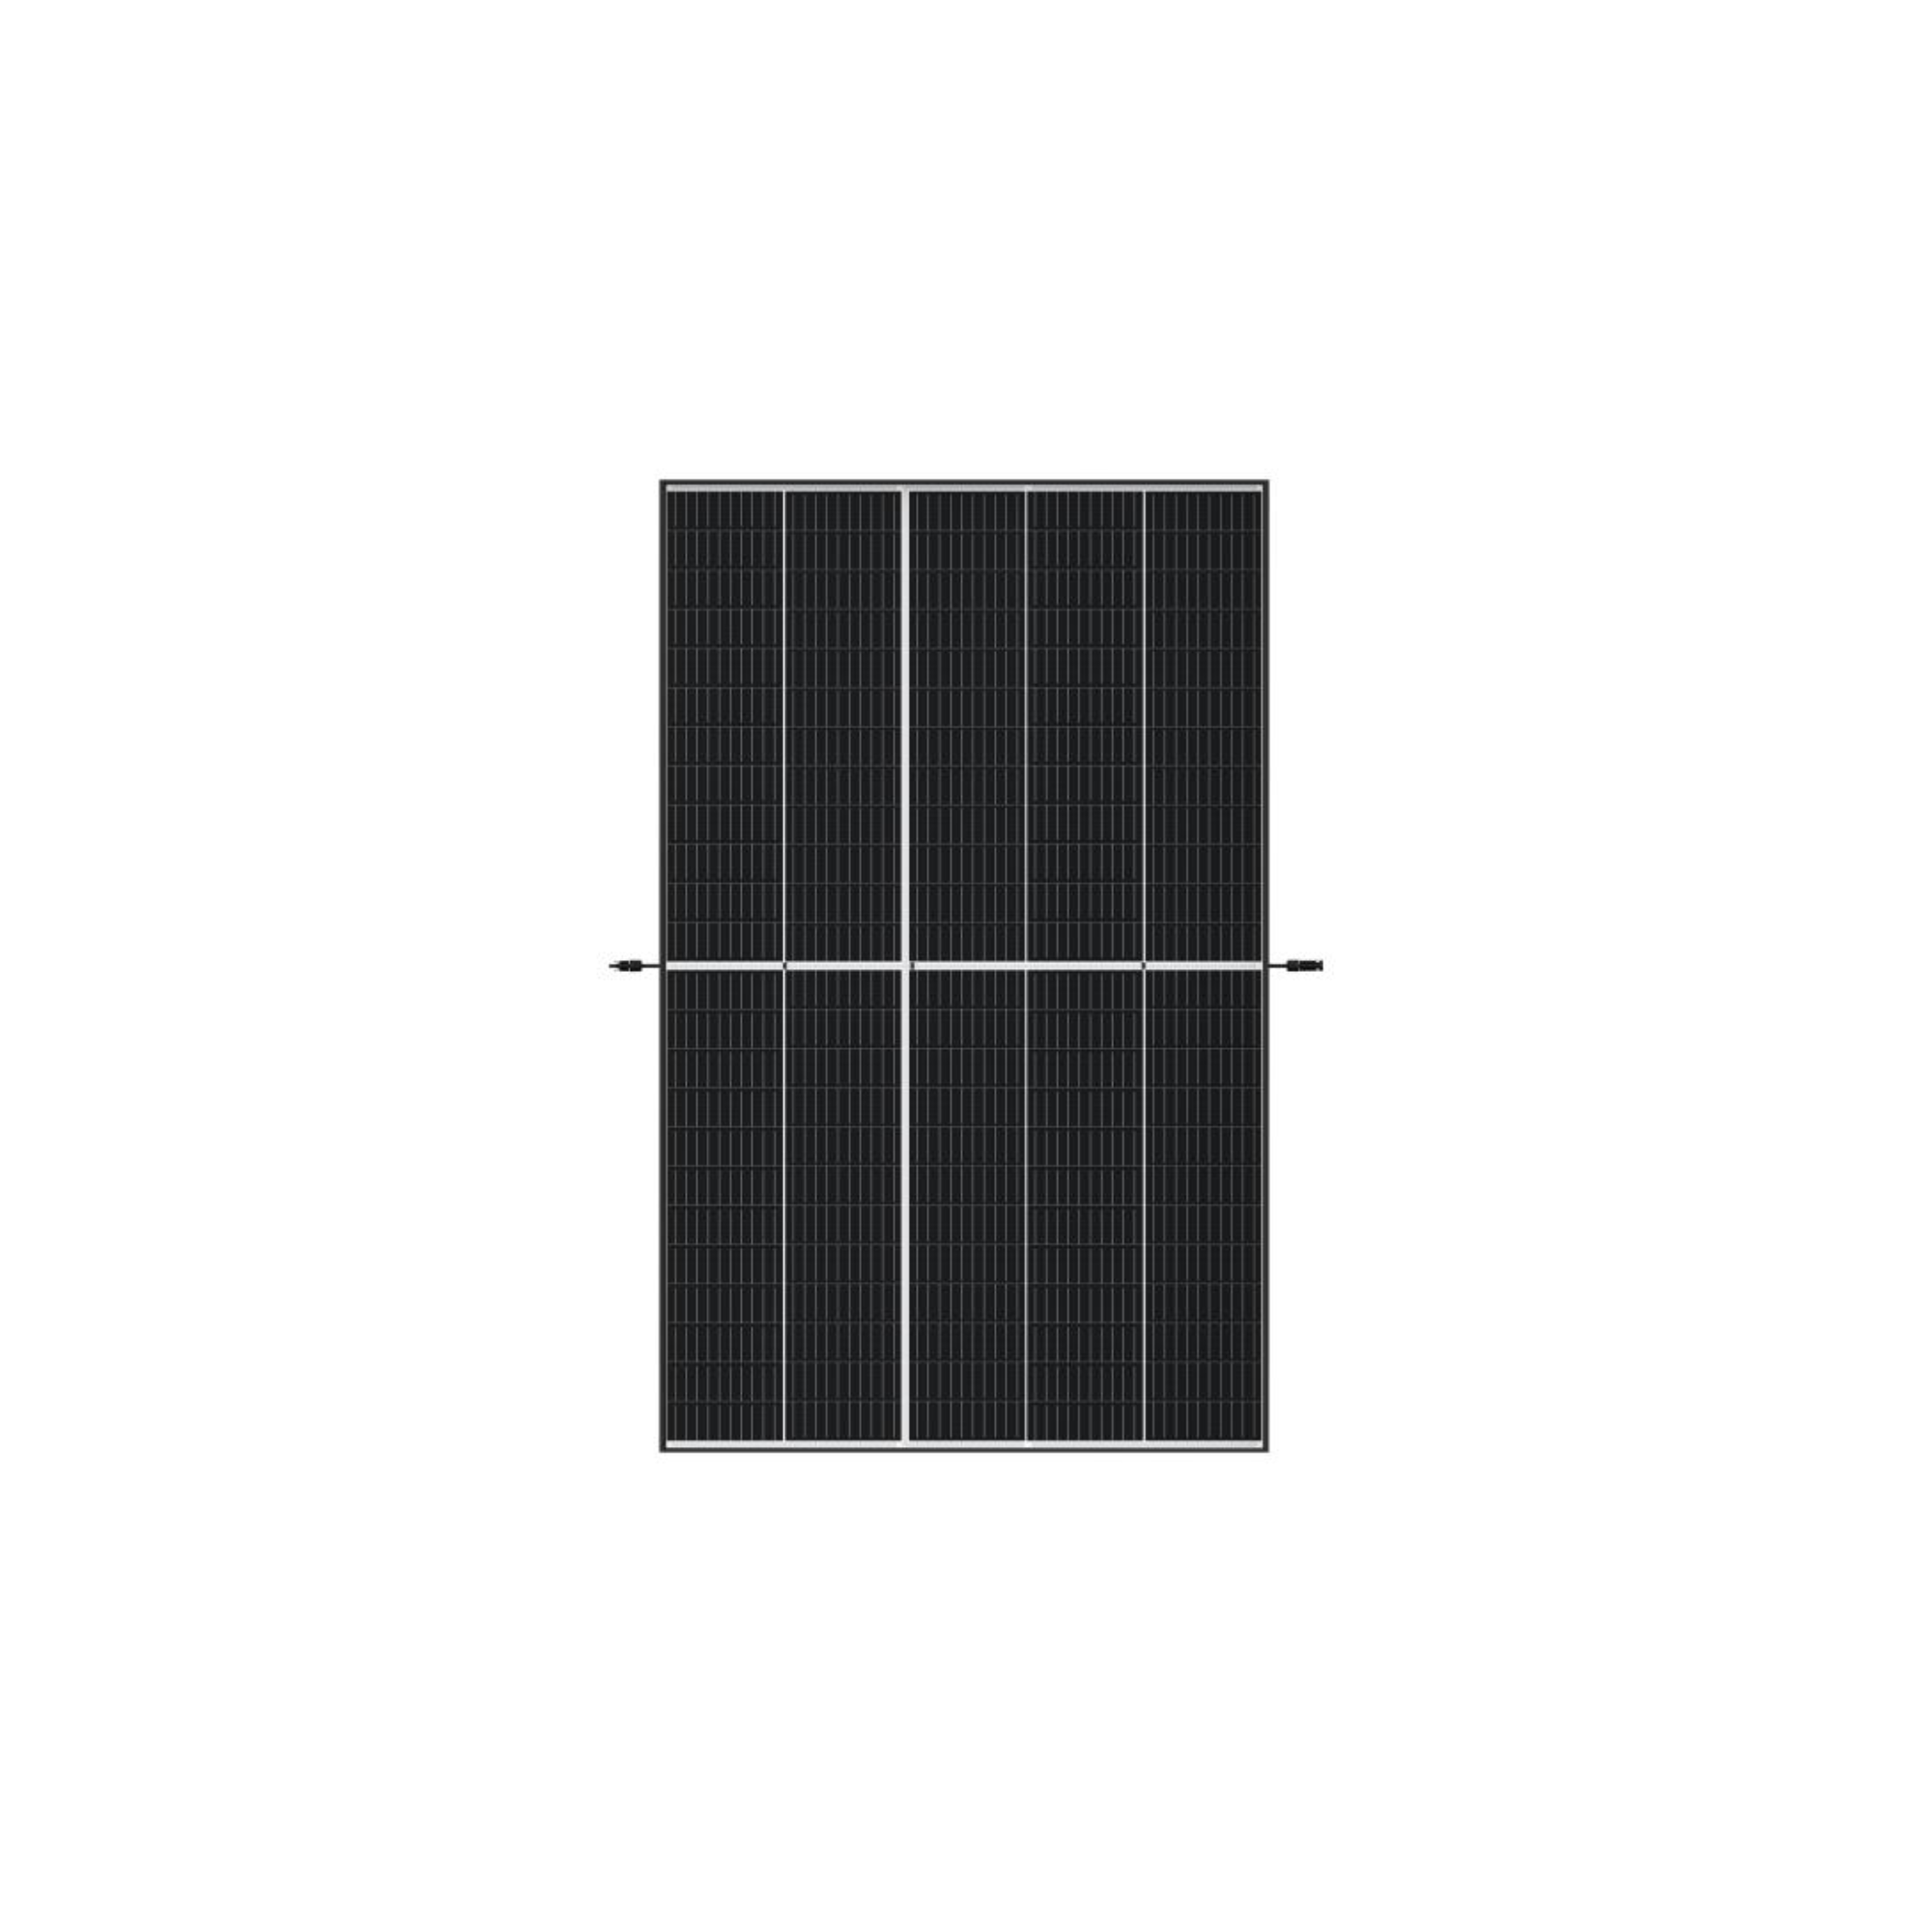 Trina Solar TSM-DE09.08 400W